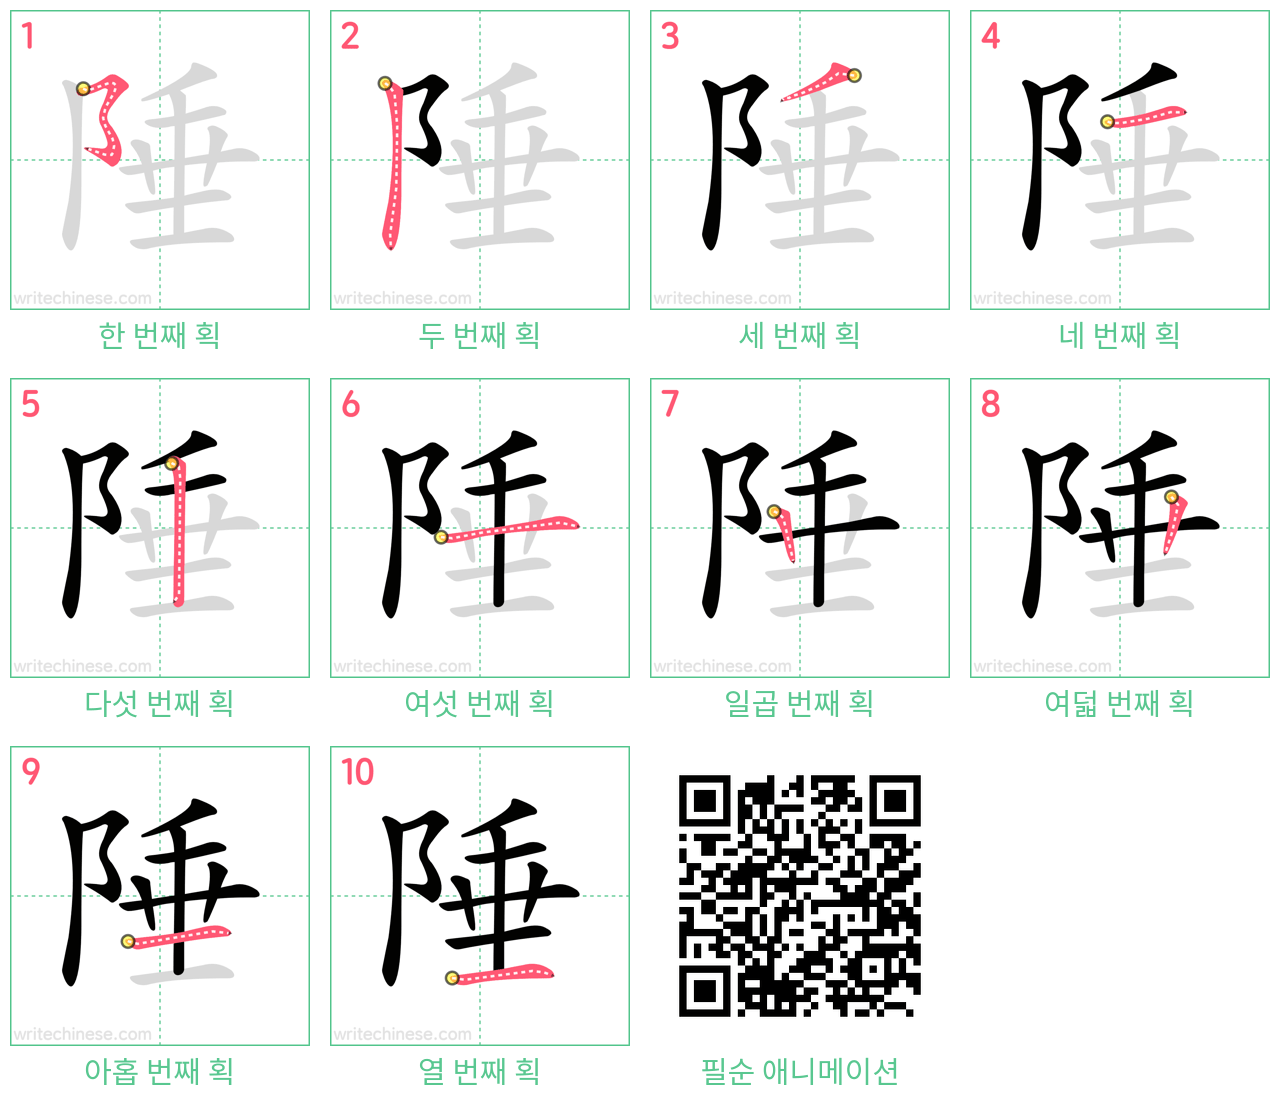 陲 step-by-step stroke order diagrams